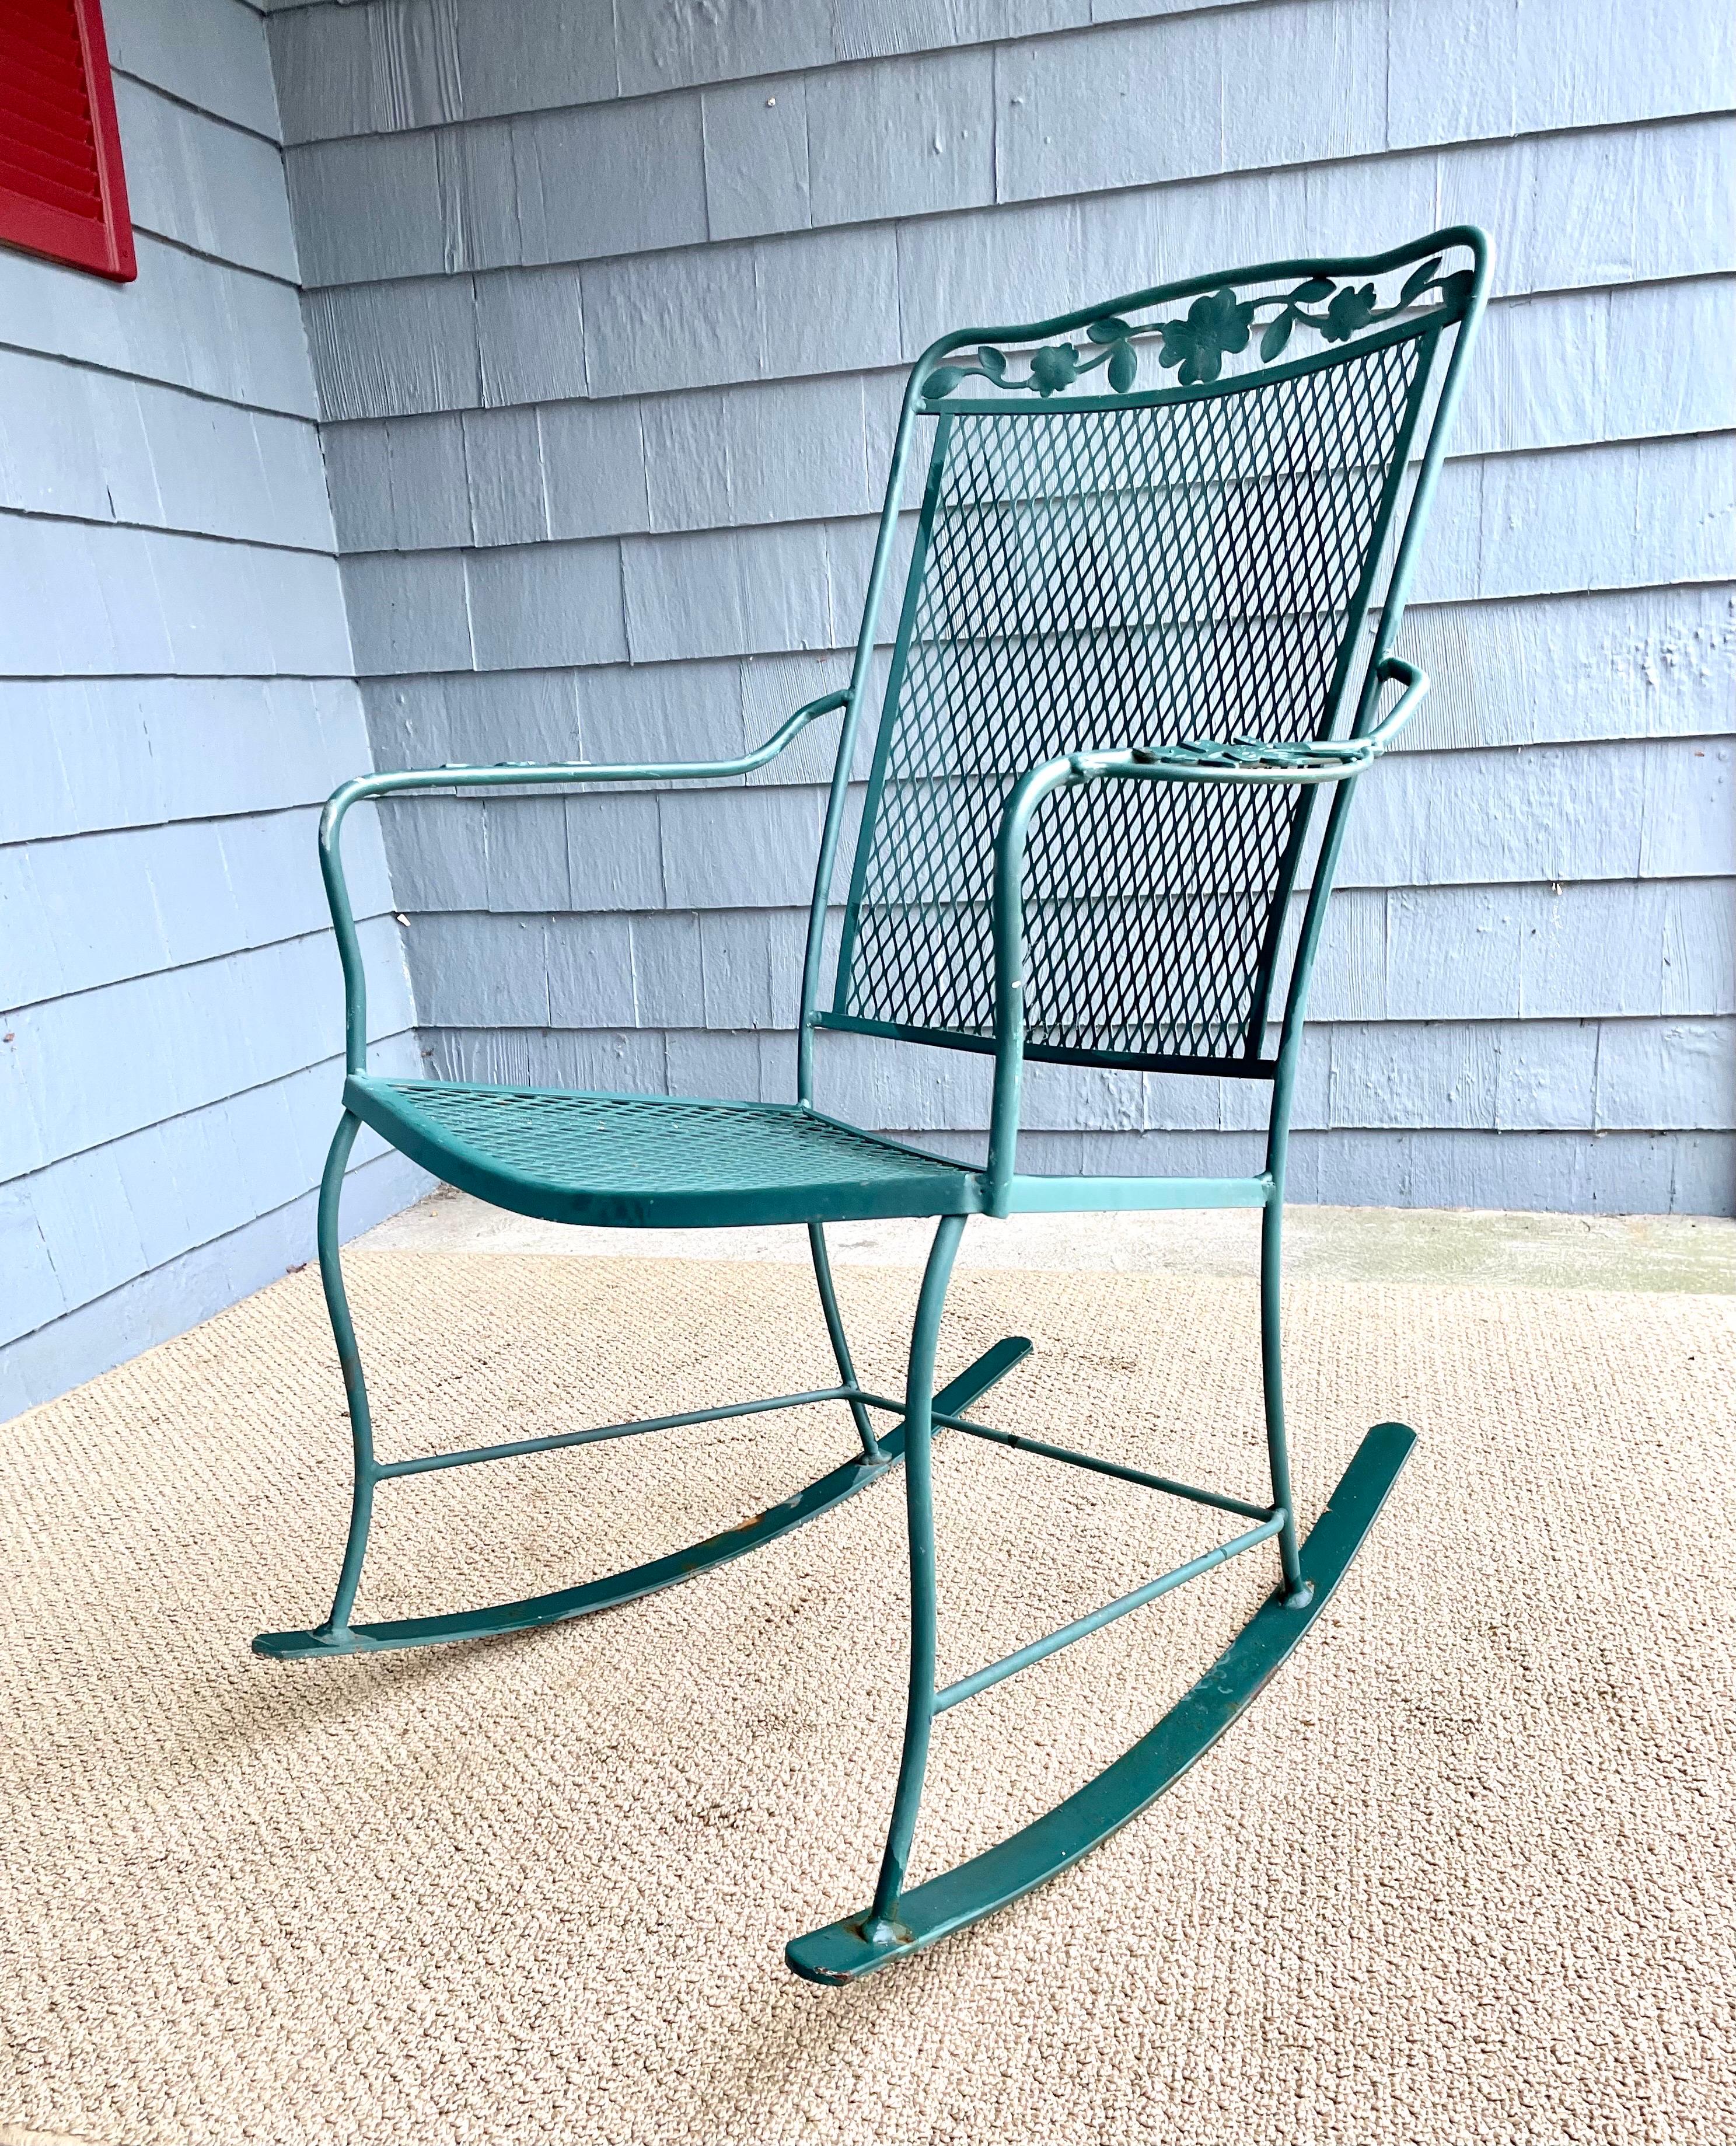 Disponible maintenant pour votre plaisir et prêt à être expédié est un Vintage Wrought Iron Outdoor Patio Rocker Arm Chair.

Ce charmant rocker-chair en fer forgé est le complément parfait de tout jardin, terrasse ou véranda. Dégustez un verre de